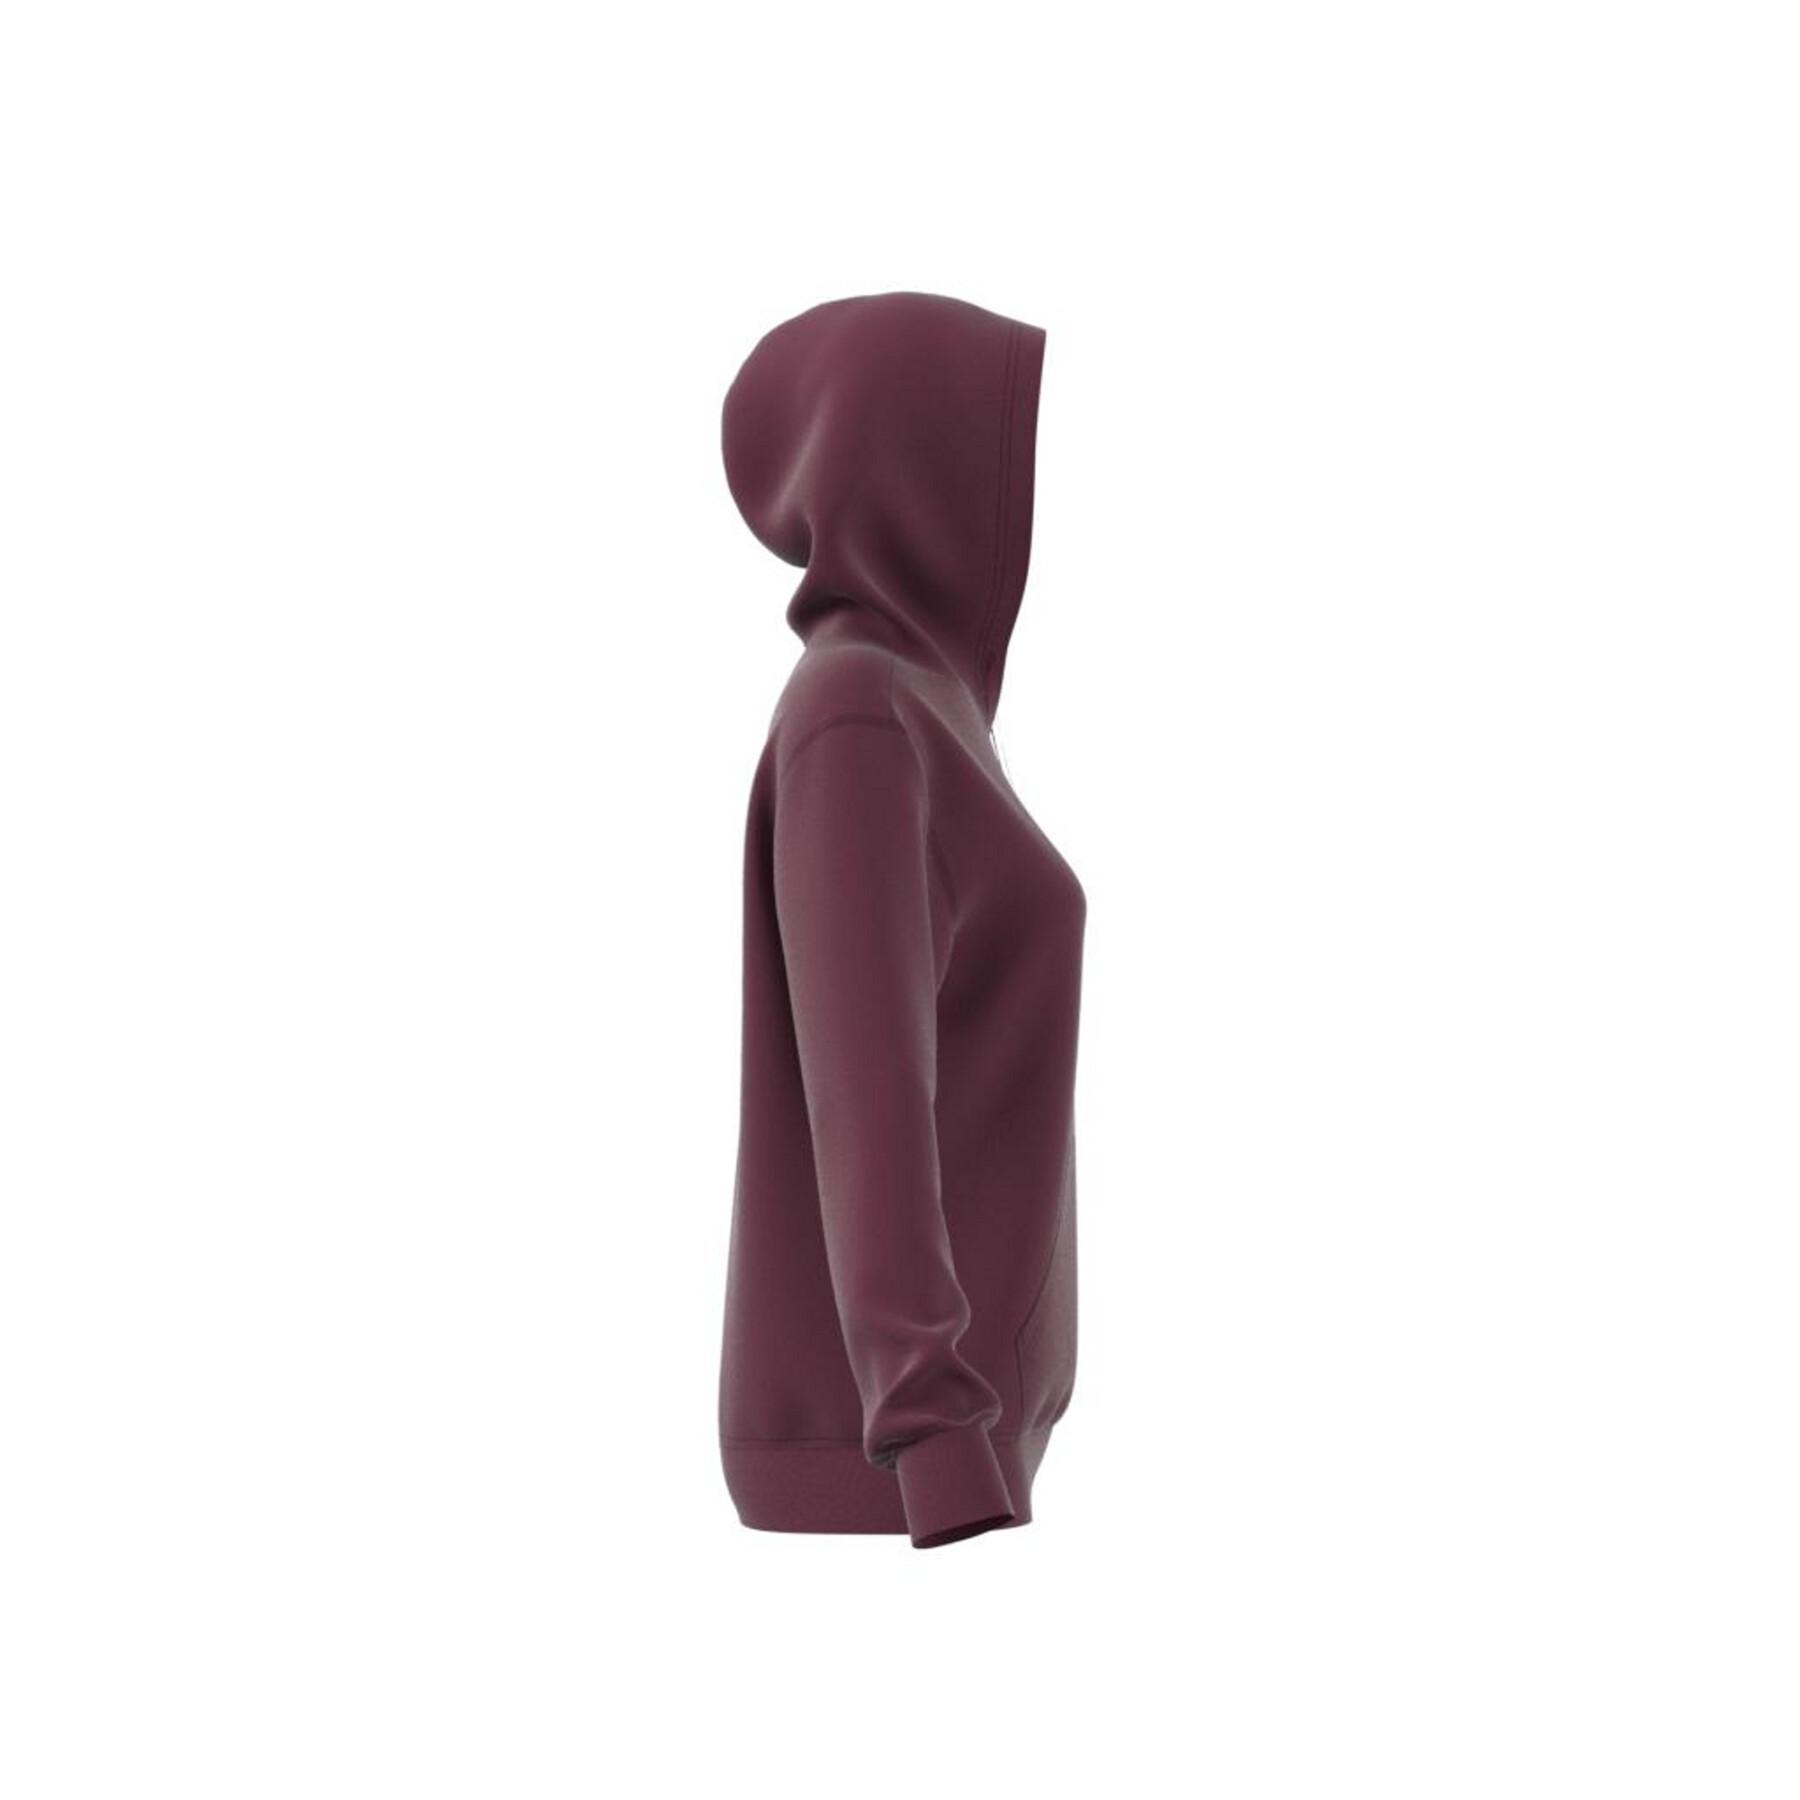 Women's hoodie adidas Originals Adicolor Essentials